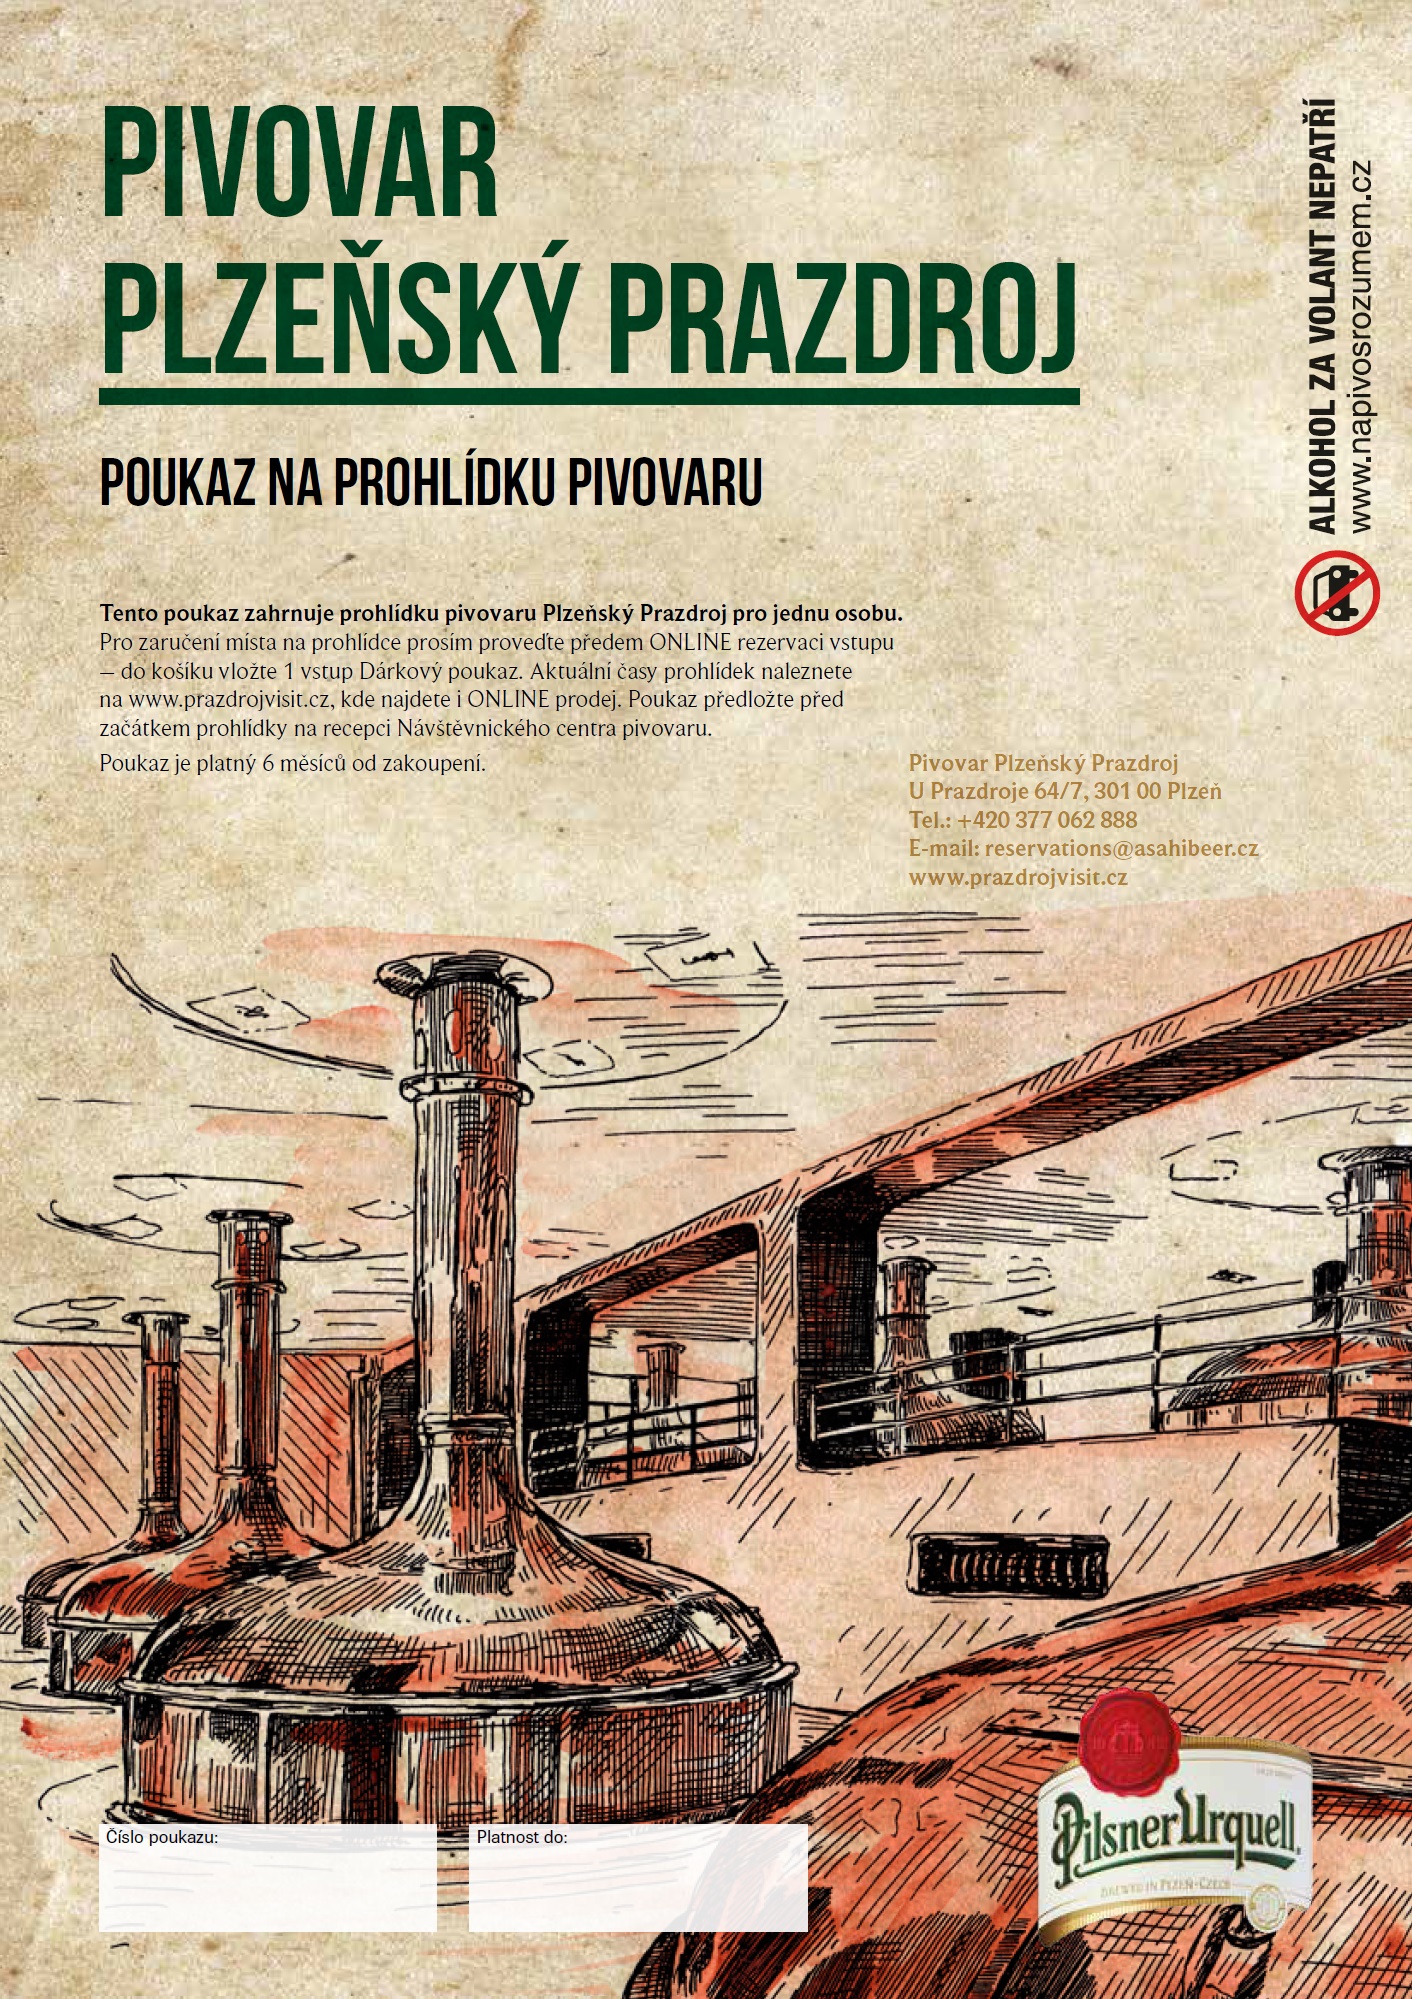 Prohlídka pivovaru Plzeňský Prazdroj bez stáčírny